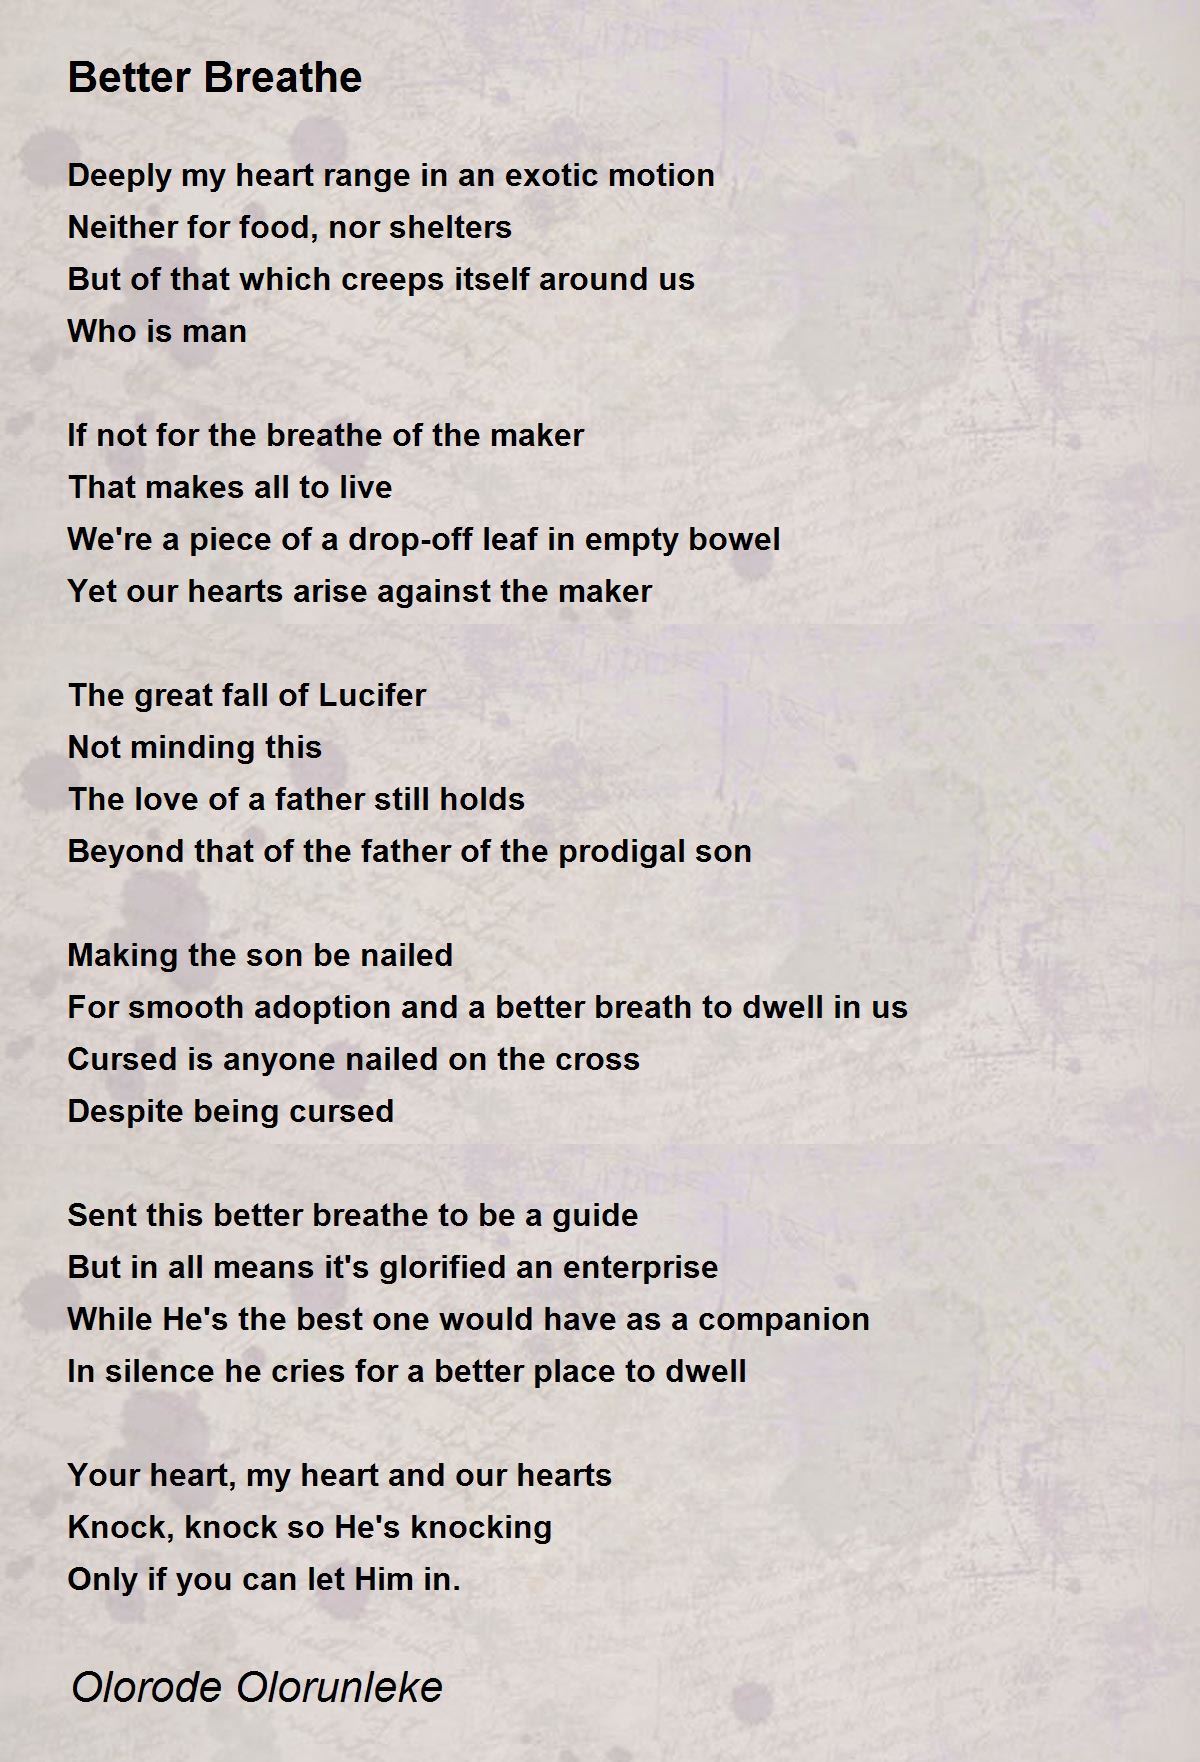 Better Breathe - Better Breathe Poem by Olorode Olorunleke